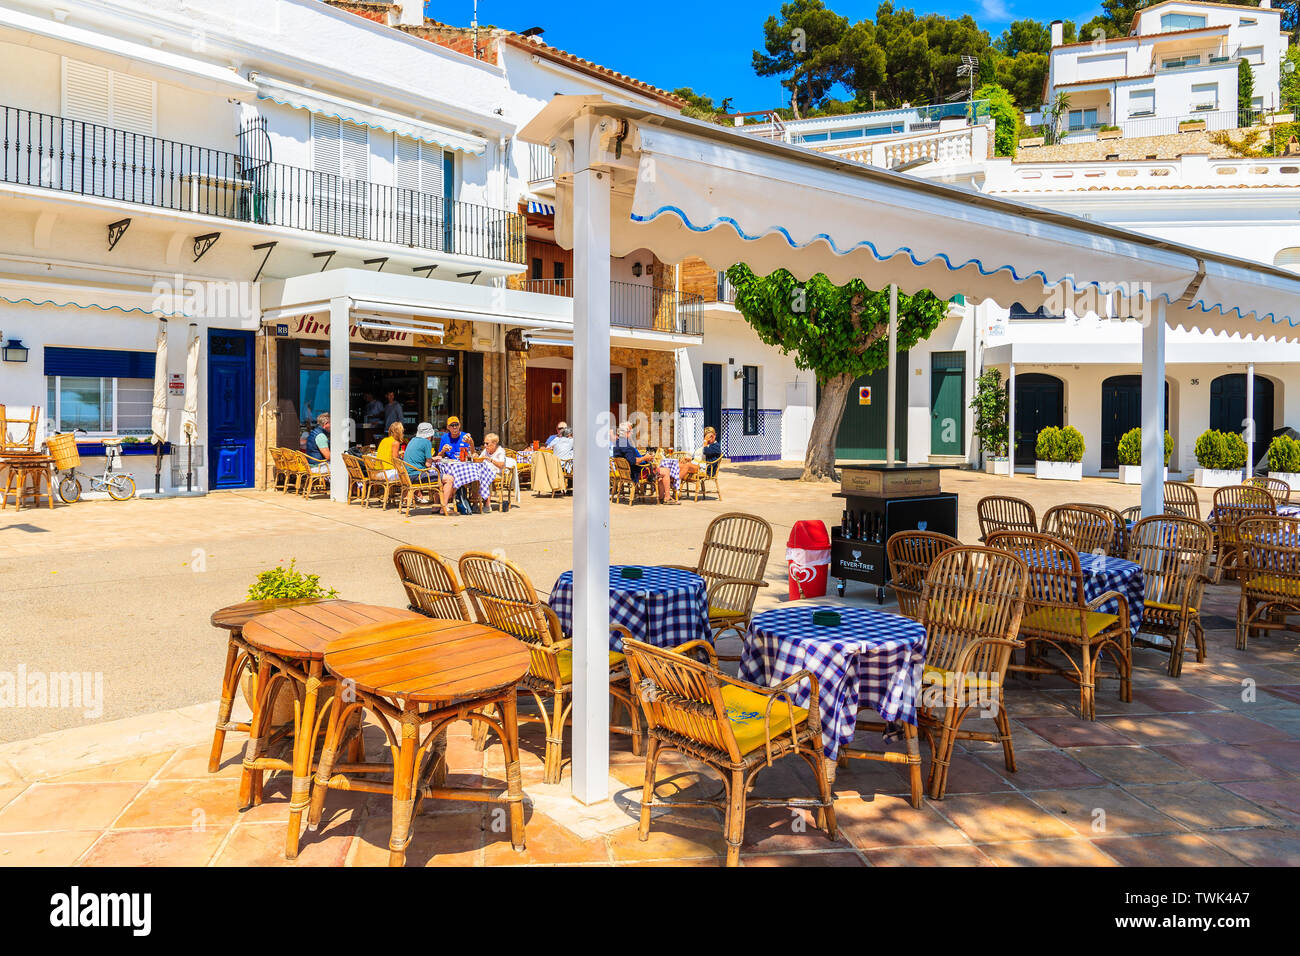 LLAFRANC, SPANIEN - Jul 6, 2019: Restaurant Tabellen auf der Straße von kleinen Fischerdorf Llafranc, an der Costa Brava, Spanien befindet. Stockfoto